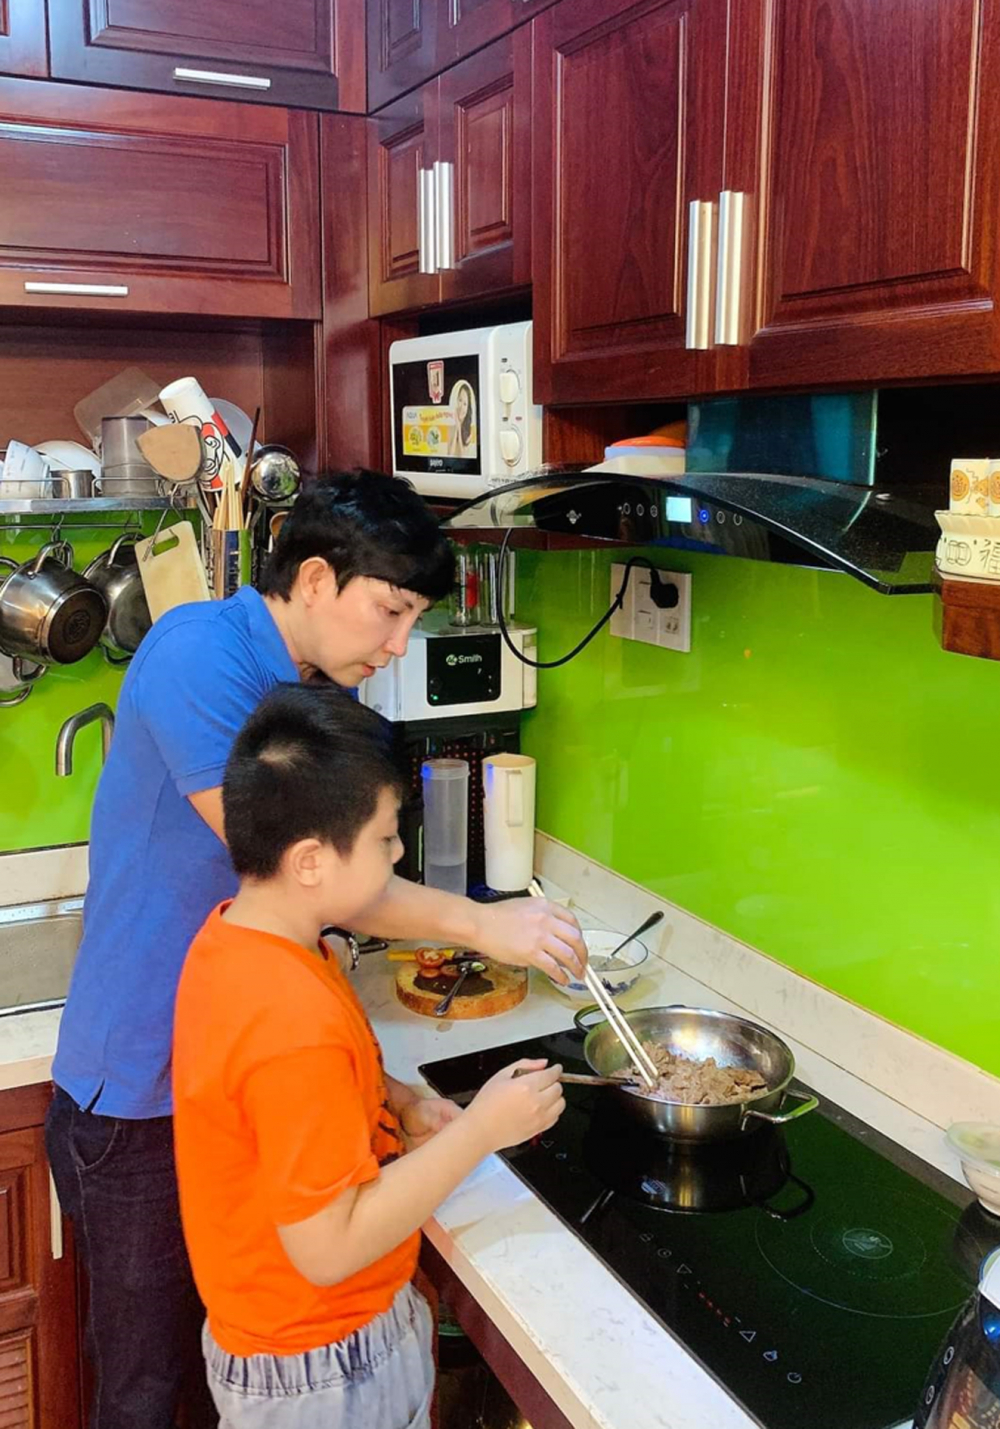 Anh Phương - một viên chức làm việc tại quận 3 - tranh thủ ngày nghỉ chuẩn bị bữa cơm cho gia đình - ảnh: uyên nhi